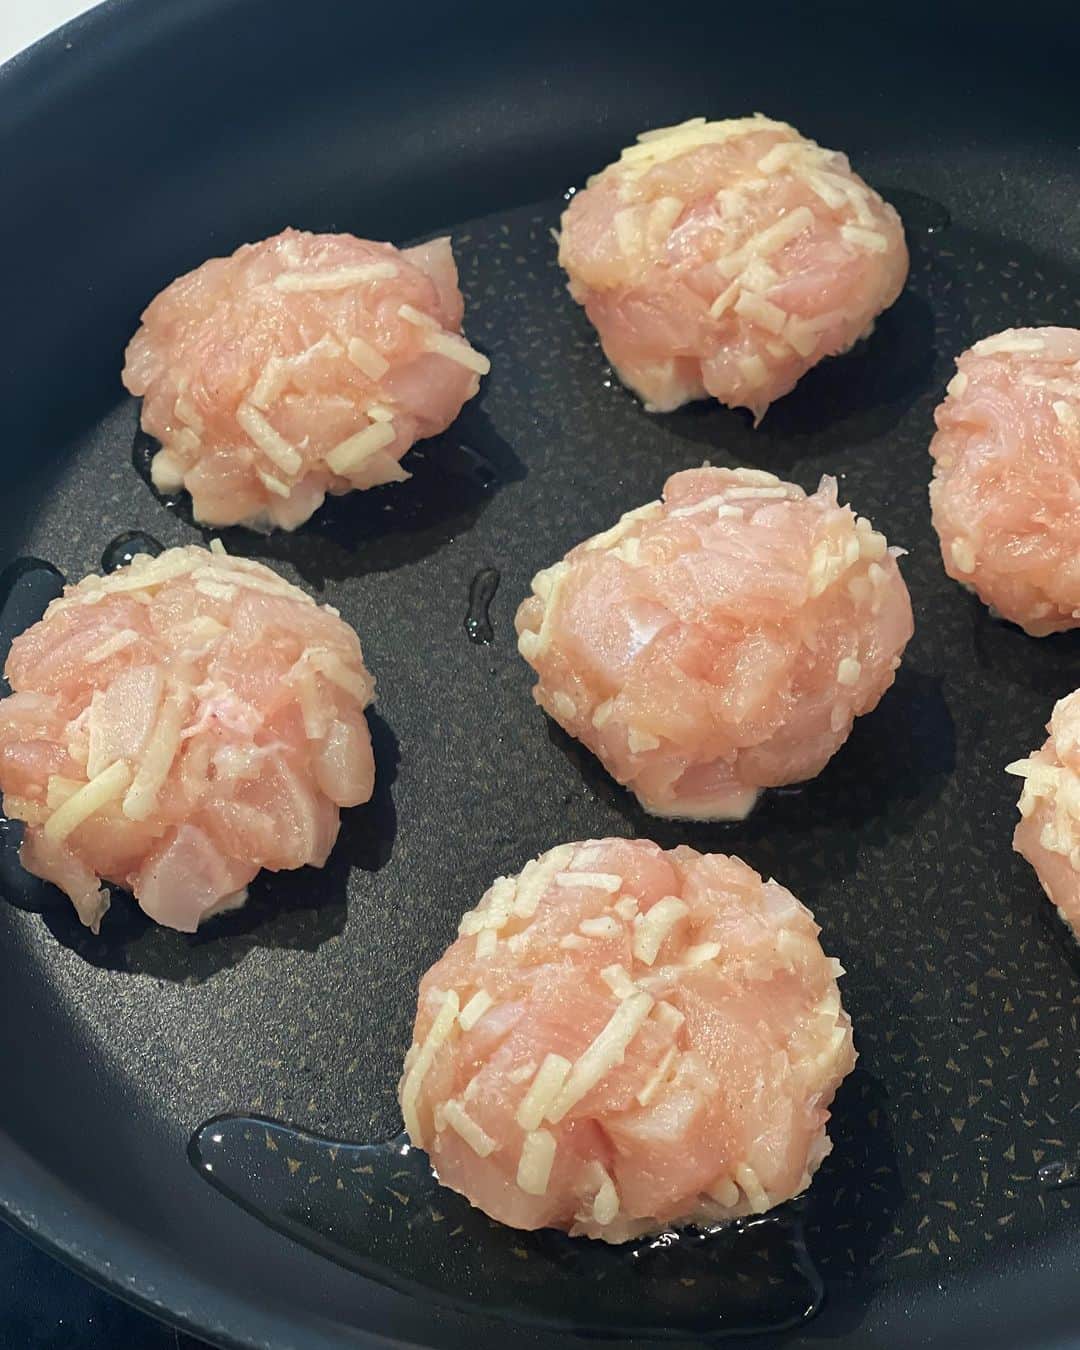 奥田和美さんのインスタグラム写真 - (奥田和美Instagram)「【ハッシュドチーズチキン】  こちらのレシピは低カロリー低糖質、高タンパク質、 さらにめちゃくちゃ美味しい！！ 鶏むね肉を細かく切って丸めたハッシュドチキン。  これ自体にしっかり味がついているので、何もつけなくても美味しいです。  これを食べたルイが  「うわっ…  うわっ…笑  うっわー……笑笑」  言葉にしなさいよいつもいつもww  めちゃくちゃ美味しかったそうです。 もう言葉じゃない反応でどれくらい美味しいのかわかるようになって来たわ。  口に入れるとほろほろと崩れる柔らかさ。 溶けだしたチーズが香ばしい。  フードプロセッサーを使ってもOKですが、その場合でも挽き肉ほどまで細かくしないのがポイント。 形が残るくらい、3～5mm角くらいが理想ですが、とりあえずくっつけばいいので！  ━━━━━━━━━━━━━━━  【ハッシュドチーズチキン】  （作り方）8個分 ◎鶏むね肉…小2枚（400g） ◎ピザ用チーズ…40g ◎サラダ油…大さじ1 A ◎片栗粉…大さじ1と1/2 ◎鶏がらスープの素…小さじ1 ◎にんにく（チューブ）…小さじ1/2 ◎塩、こしょう…各ひとつまみ  【作り方】 1.鶏むね肉は皮を取り、小さい角切りにしたらボウルに入れAを加えてよく混ぜる。さらにピザ用チーズを加えて混ぜ合わせる。 2.1を8等分にしたらそれぞれをギュッと強く握って丸め、形を整える。 3.サラダ油を中火で熱したフライパンに2を並べてこんがり焼き、焼き色がついたら裏返してフライ返しで表面をギュッと押さえて蓋をし、弱火で5分蒸す。 4.蓋を取って強火にし、両面カリッと色よく焼く。  ✅丸める時にギュッとしっかり握ると崩れにくいです ✅焼き色がつくまで触らずしっかり焼いてから裏返し、フライ返しなどでギュッと押し付けるとさらに崩れにくくなります  ━━━━━━━━━━━━━━━  こんがり焼くのがポイント！ チーズの香ばしさがたまりません。 お好みでケチャップをつけてどうぞ！  良かったら作ってみて下さいね。  ┈┈┈┈┈┈┈┈┈┈  今年の6月、ルイが英検を受ける日の前日になって 「受験票をもらってない」 と、とんでもない事を言い出して大騒ぎした一件がありました。  結局受験票は自分が持っていて（何だったんだあの騒ぎは）無事受験、この級は無事合格しました。  そして今日はその1つ上の級の受験日。  前回の一件があるので、数日前に「受験票あるね？」と聞くと、あると言って受験票を見せてくれていたので一安心。  そして昨日の夜。  当日は朝8時過ぎには家を出ないといけなかったので、 朝慌てないように準備を完璧にしておきなさいねと、 筆記用具と受験票を忘れないようにもうリュックに入れておきなさいよと言うと、 ルイが恐ろしいことを口にした。  「受験票に貼る俺の写真は？」  知らんがなww  「いや3日くらい前にこの辺（リビング）で見た気がして」  いやいやいや、お母さんはリビングの住人ですけども、一切見ておりませんけど？！  「そっかー、どうしよっかな。 あ、大丈夫！代わりになる写真あるわ」  とのんびり部屋へ行き、彼が自信満々に持って来たのは高校の学生証。  まさか… この学生証の写真を引っペかざして貼るつもりかお前は…  あかんあかんあかん、これ使うのはダメ！ 学校の印がエンボスパンチされてるやん！ しかも受験票返って来ないよね？！  本人いわく受験票は返って来るらしいけど、そういう問題ではない。 さすがにあかんやろ。  そこで、夫が口を出して来た。  「学生証の写真をカラーコピーして受験票に貼ればいいんちゃう？」  うるさい！黙っててくれ！！  2人とも呑気か。 なんで今頃言うのよ。 なんで前日にそんな重要なことを…！（もはやお家芸になりつつある前日の騒動）  ただいま夜中の12時でございます。 もうこれは探しても見つかる気がしない。  とりあえず、早朝に駅前の証明写真の機械に撮りに行かせるしかない。 ってことでとにかくはよ寝てくれ！！  と1人イライラしていると、パジャマ（半袖半パン）のルイが  「夜ってもう寒いよね、この服で今の外の気温を体感したいからちょっと外出ていい？笑」  うるさい！はよ寝ろ！！！  もう、どいつもこいつも…！  そして今朝、のんびりのんびり用意をしてのんびり自転車で証明写真を撮りに行って帰って来たルイは  「急がなくてもいけたな」  うるさい、はよ行け！！  と思ったら、今度は裸足にクロックスで行こうとするルイを呼び止め、  「まさか、それで行くんちゃうよね…？」  「やっぱりダメ？笑」  ワンチャンいけるかなみたいなww  とりあえず無事靴下にスニーカーを履き、写真を貼った受験票を持って、やっと出て行きました。  朝から疲れたわ。 本当にもう勘弁してくれよ…  #ハッシュドチキン  #ハッシュドチーズチキン  #鶏むね肉  #鶏むね肉レシピ  #鶏肉  #鶏肉レシピ  #ダイエット  #ダイエットレシピ」10月8日 12時59分 - kazumiokuda